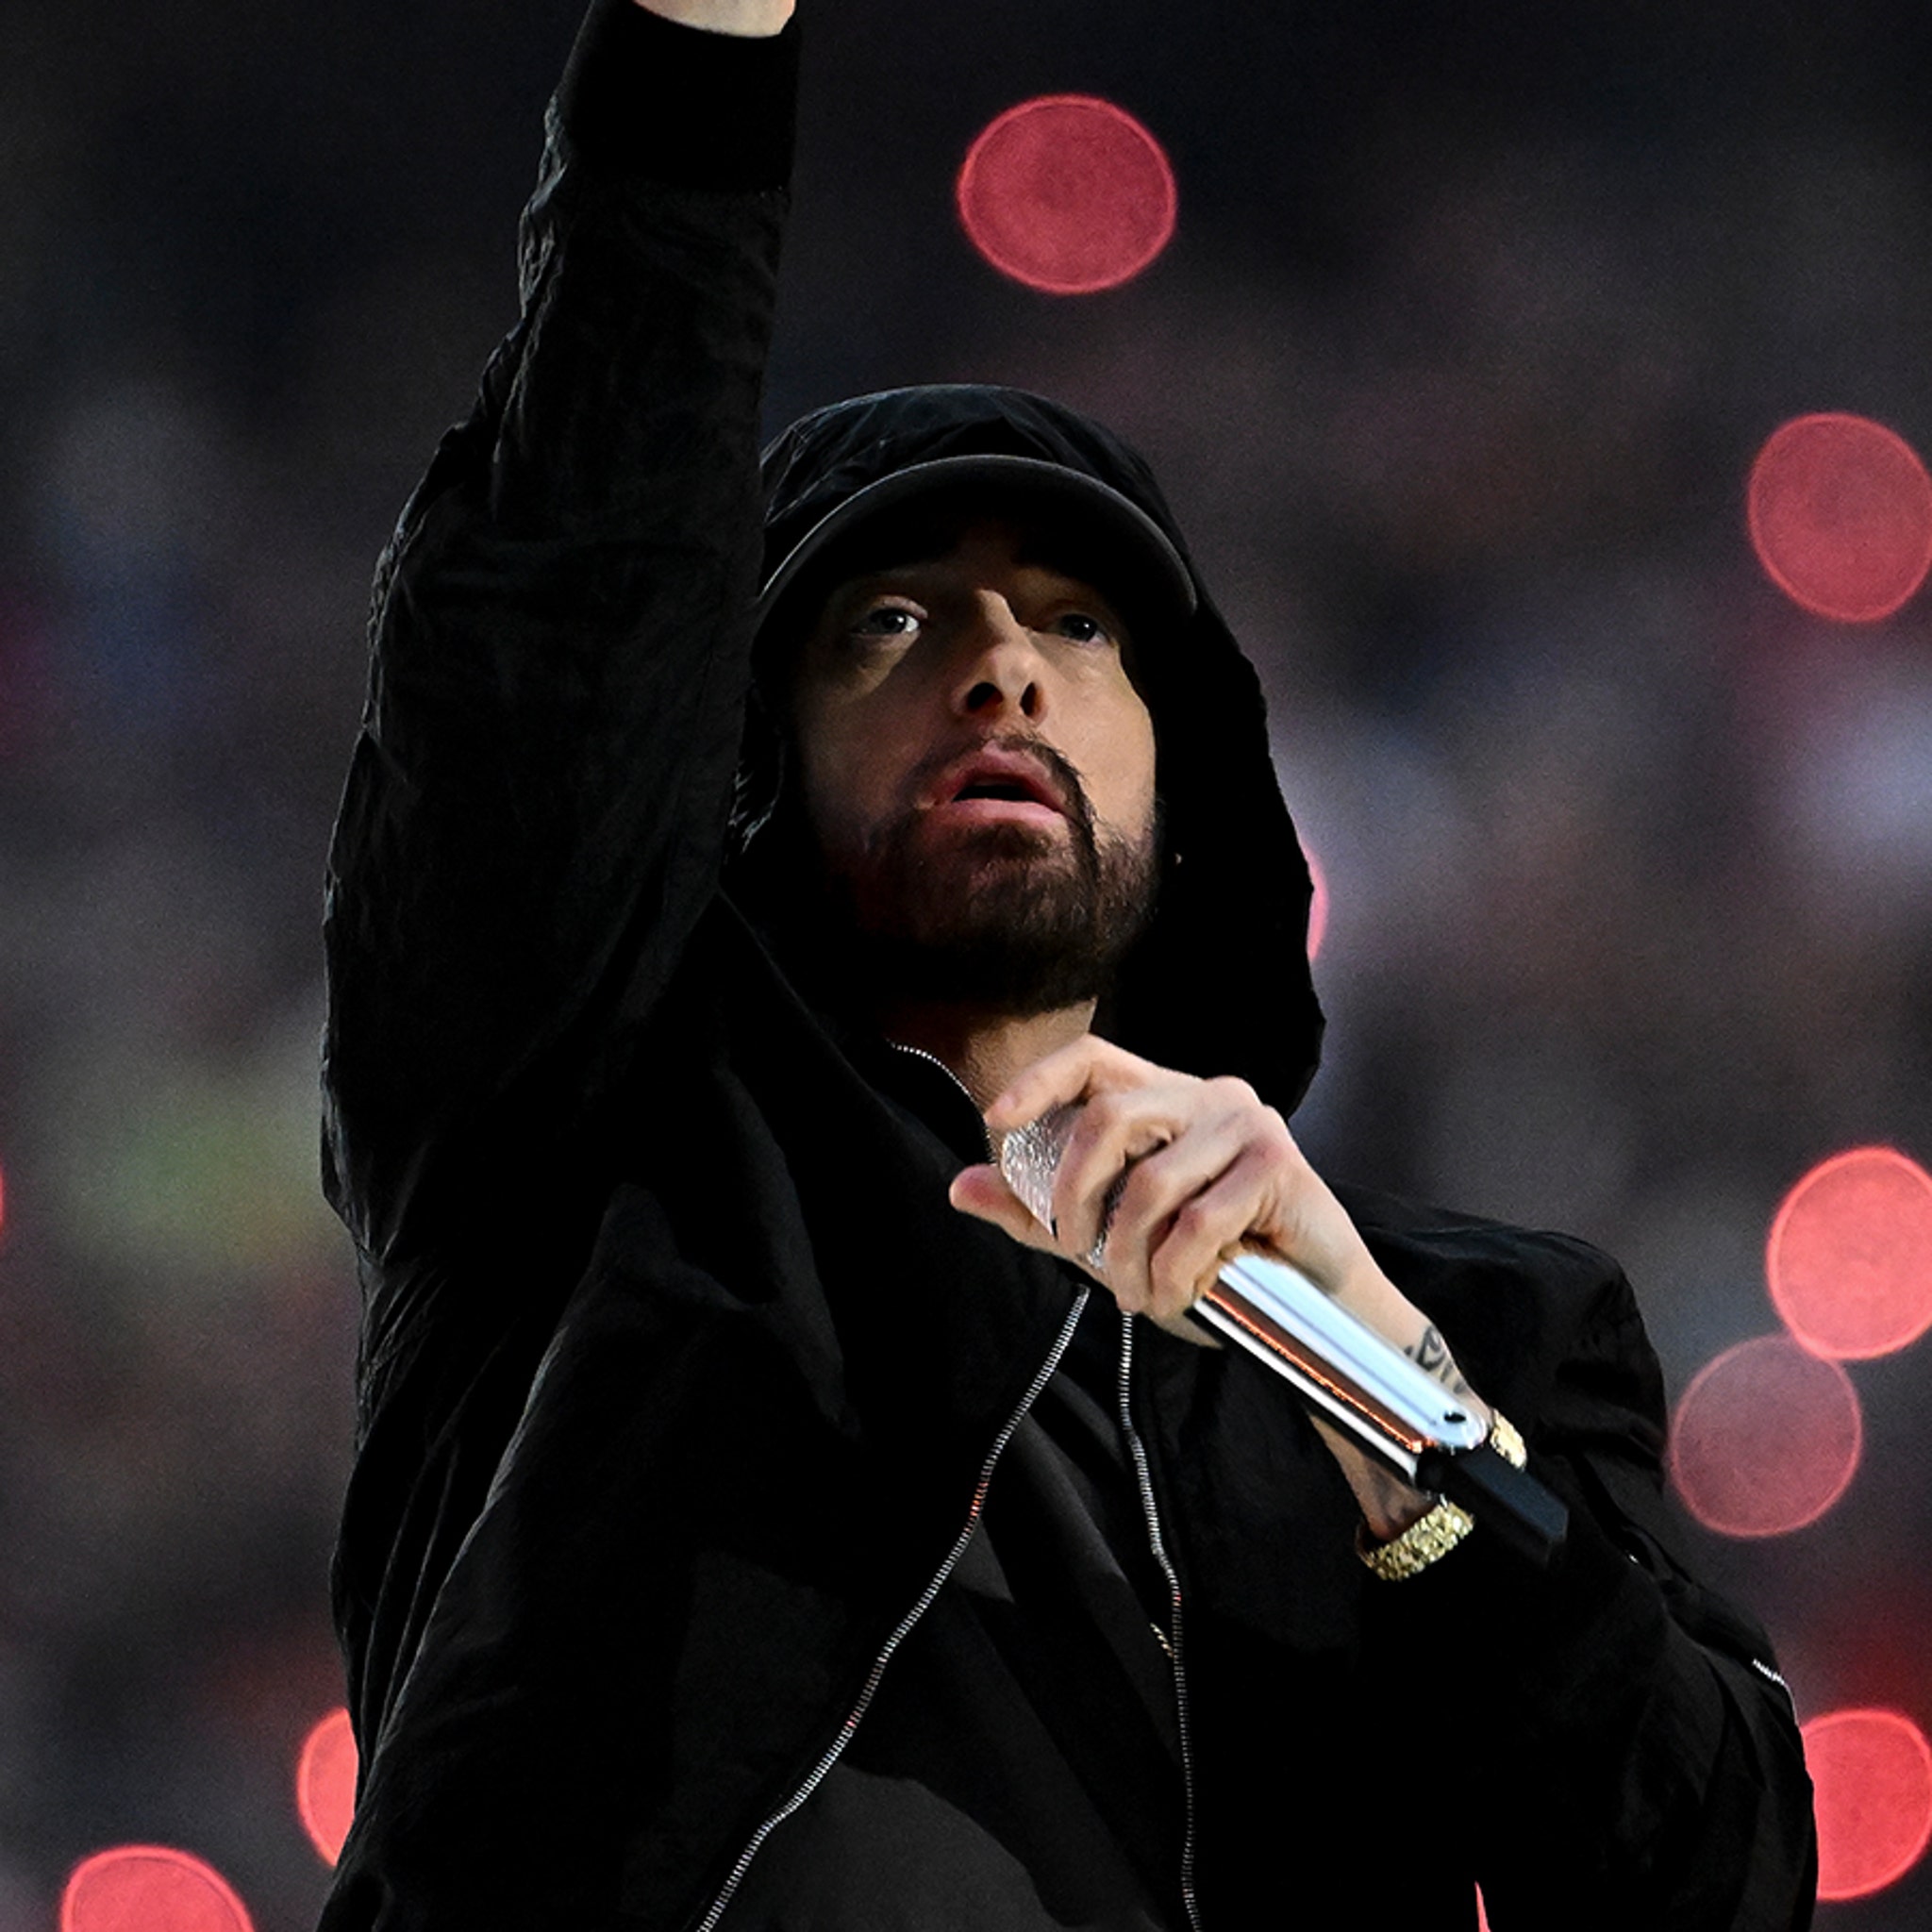 Super Bowl 2022 Halftime Show: Dr. Dre, Eminem & More Deliver Epic